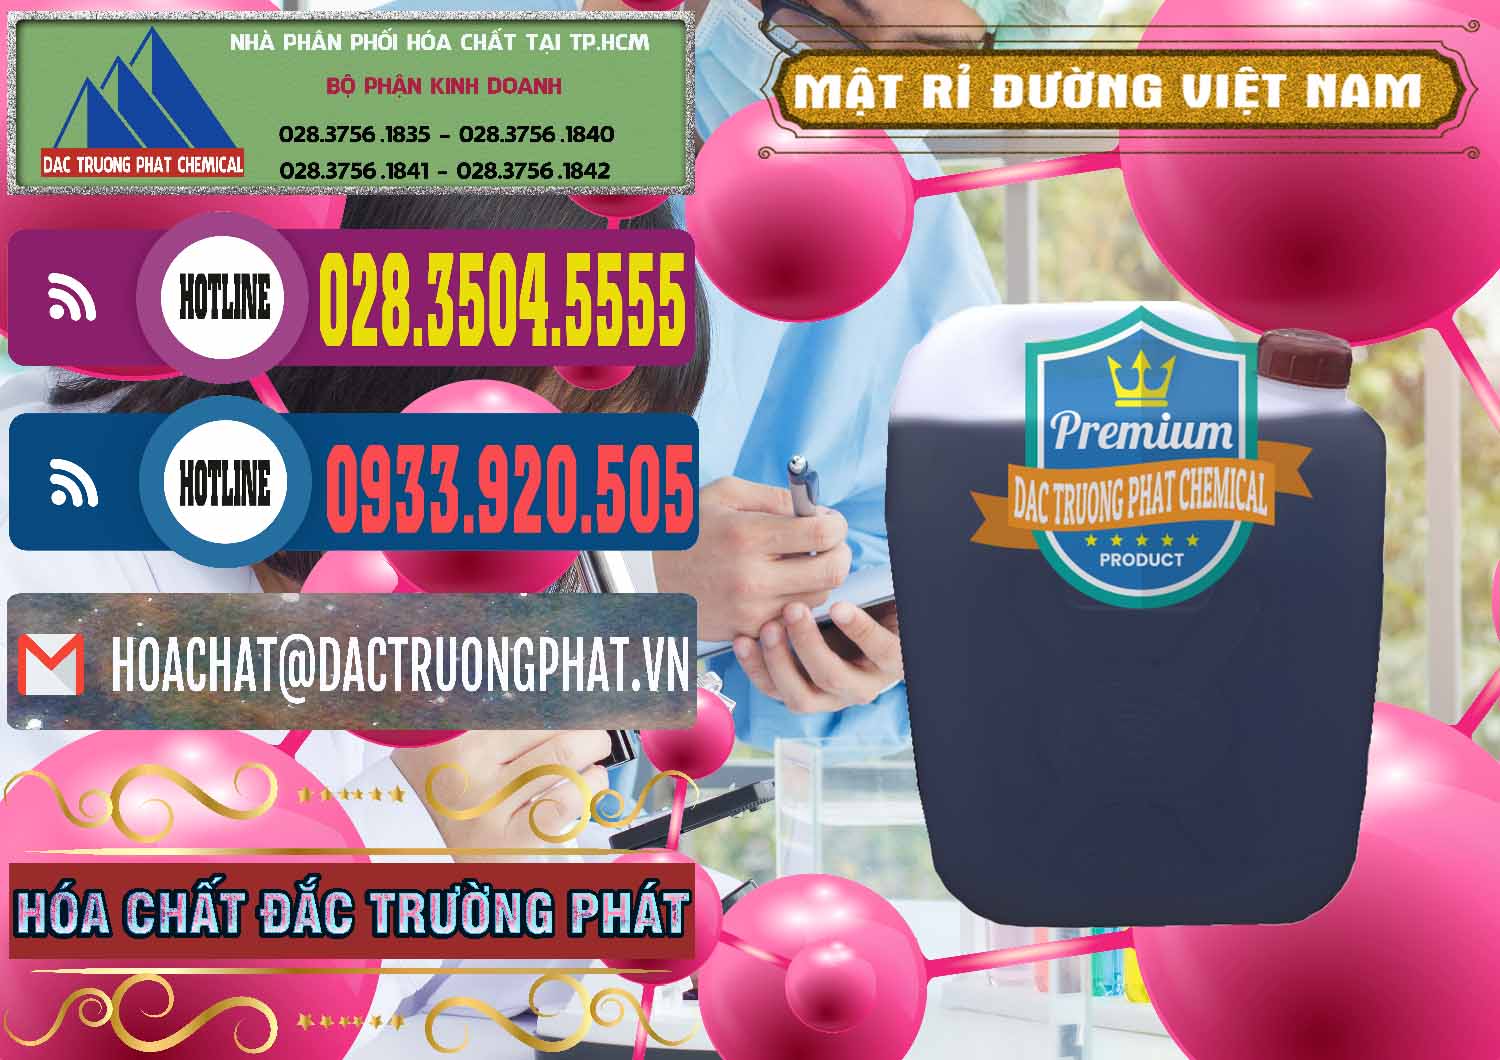 Đơn vị bán & cung ứng Mật Rỉ Đường Việt Nam - 0306 - Cty cung cấp & bán hóa chất tại TP.HCM - muabanhoachat.com.vn